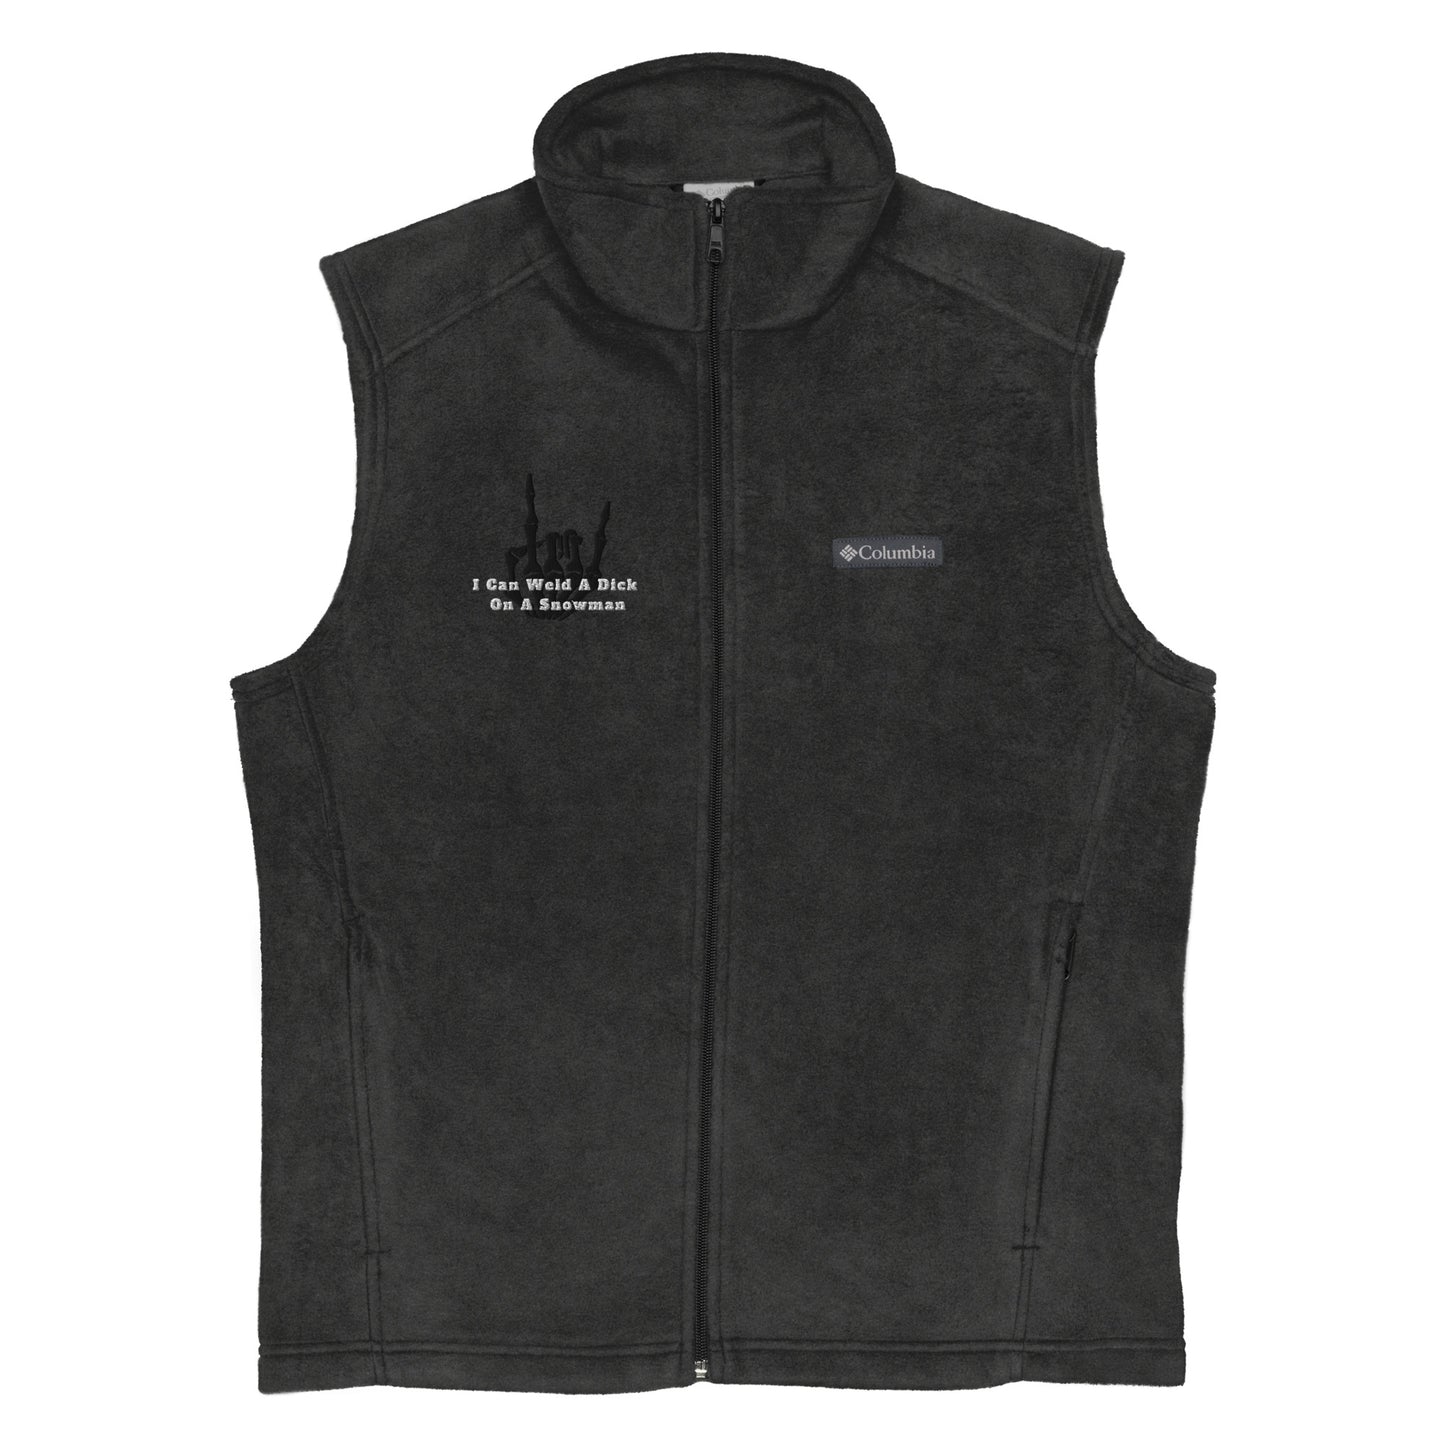 Men’s Columbia fleece vest